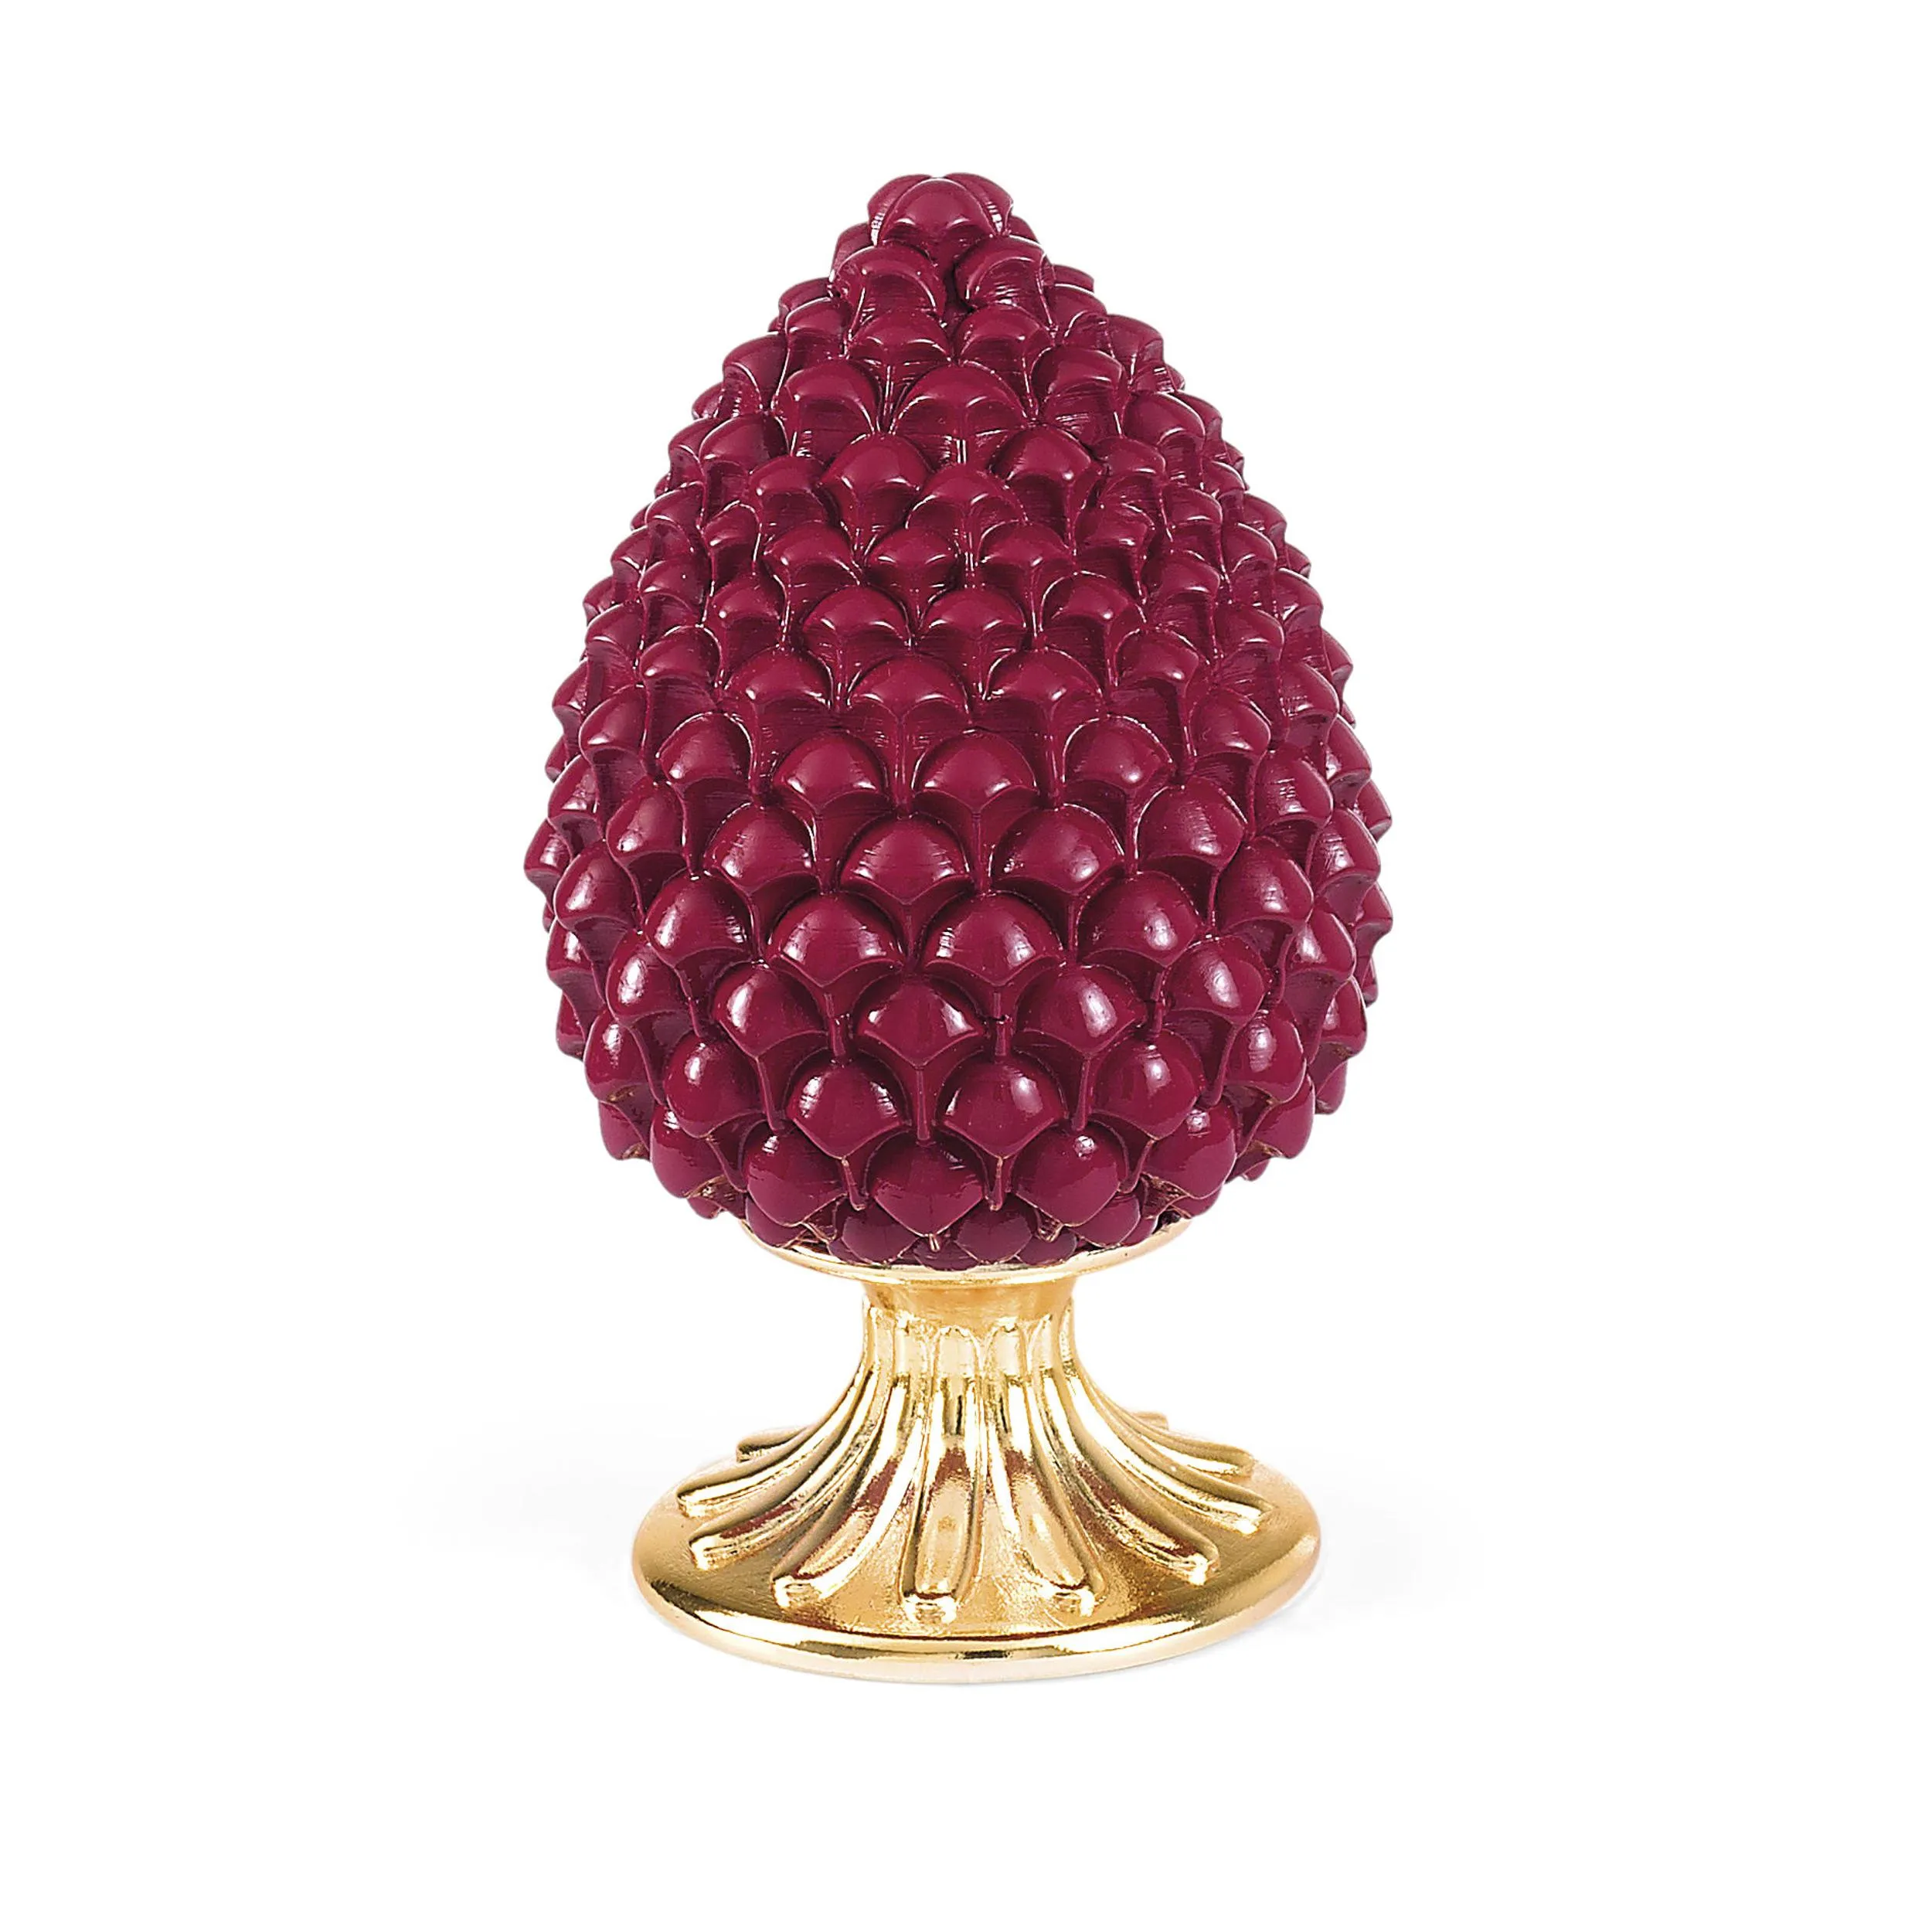 Pigna Bordeaux con base Oro, diametro 7,5xh13 cm h13 cm in scatola regalo, regalo